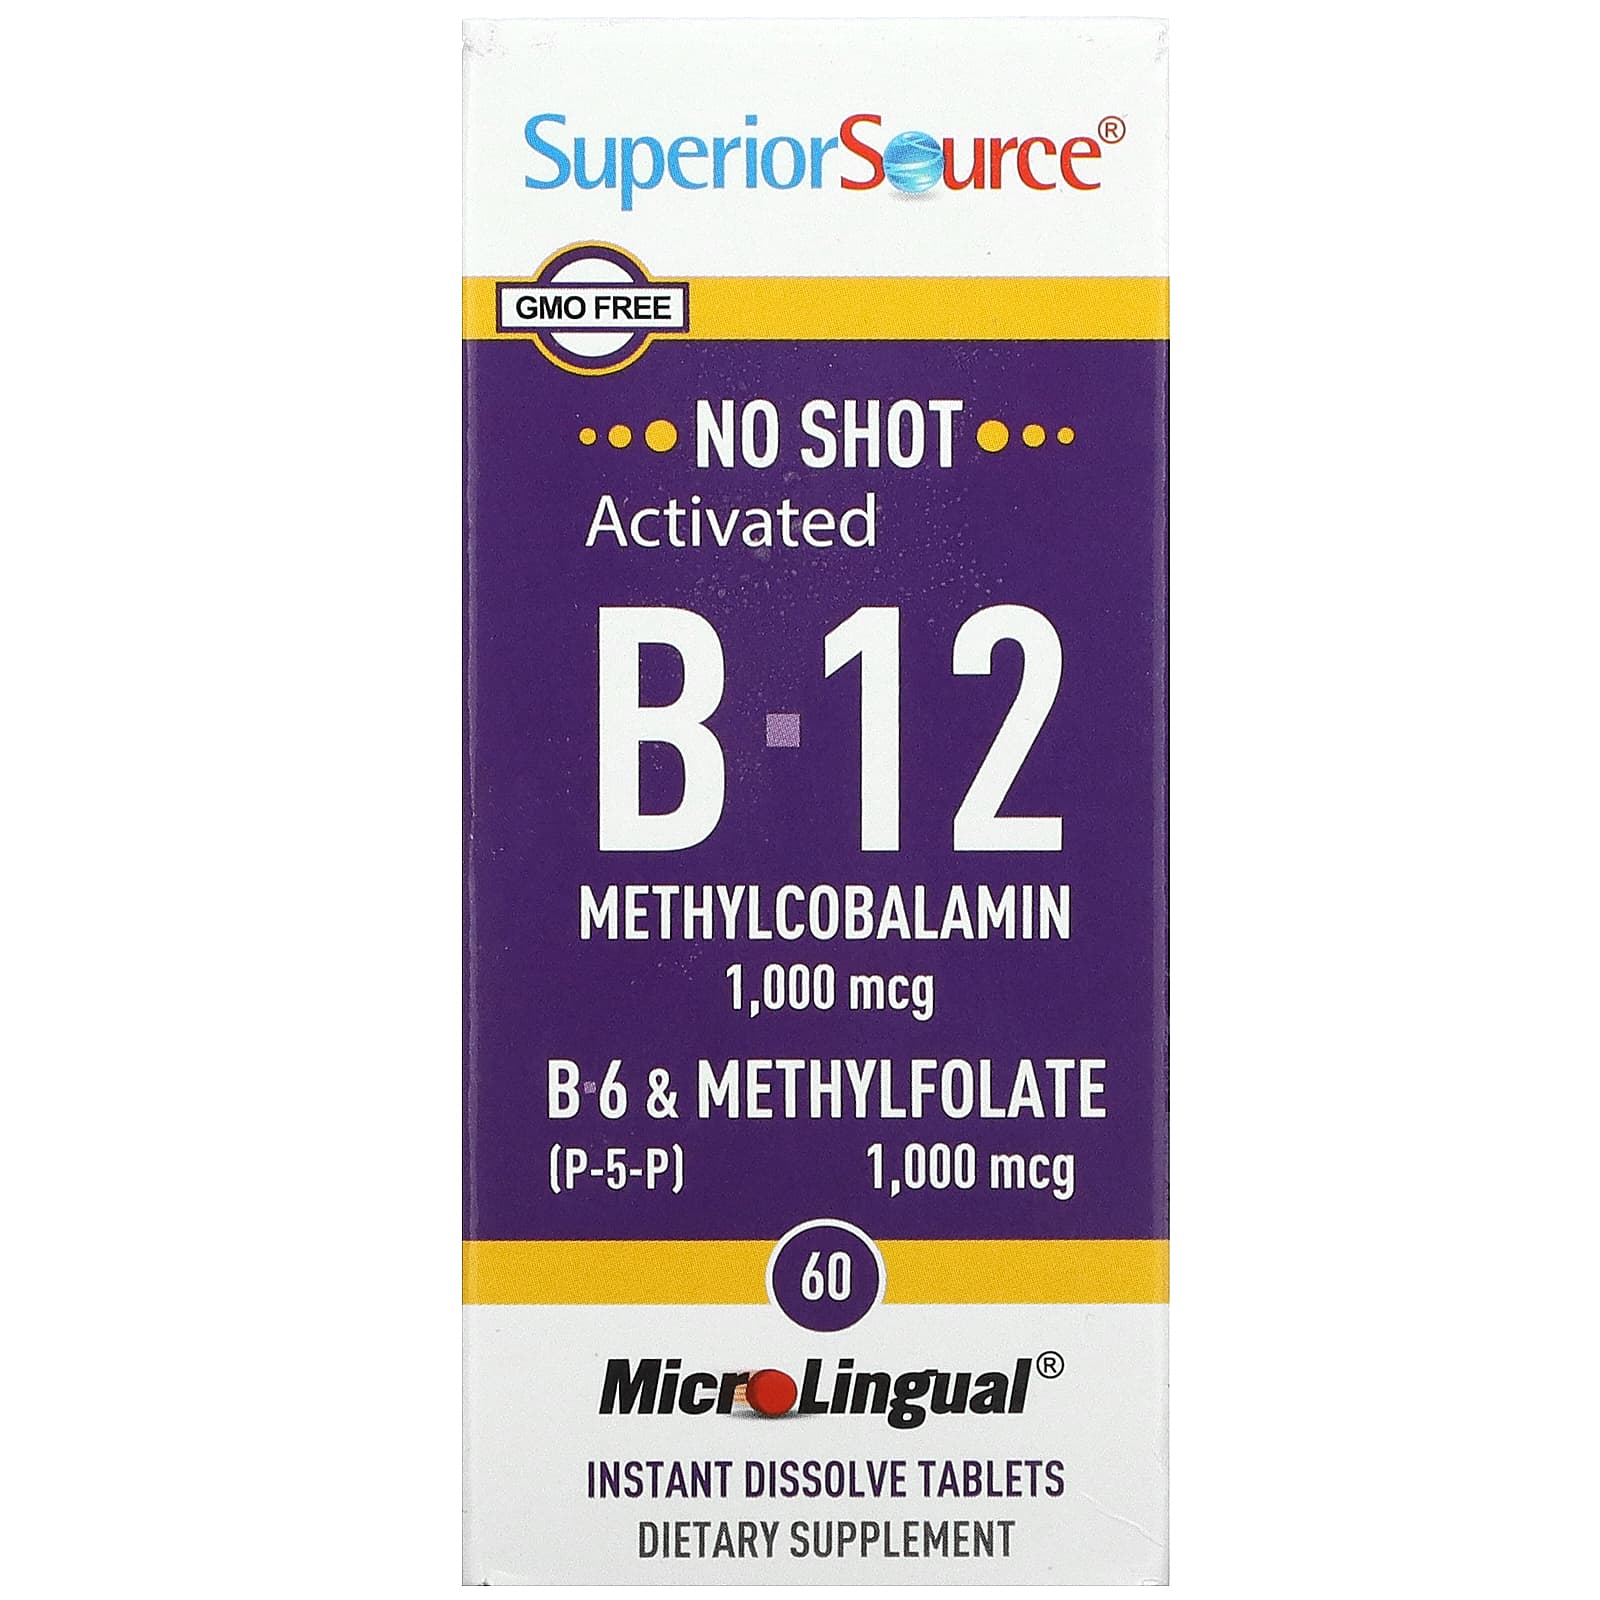 Superior Source Активированный B-12 метилкобаламин B-6 (пиридоксин) и метилфолат 1,000 мкг / 1,000 мкг 60 микролингвальных быстрорастворимых таблеток superior source метилкобаламин b 12 1000 мкг 60 быстрорастворимых таблеток microlingual